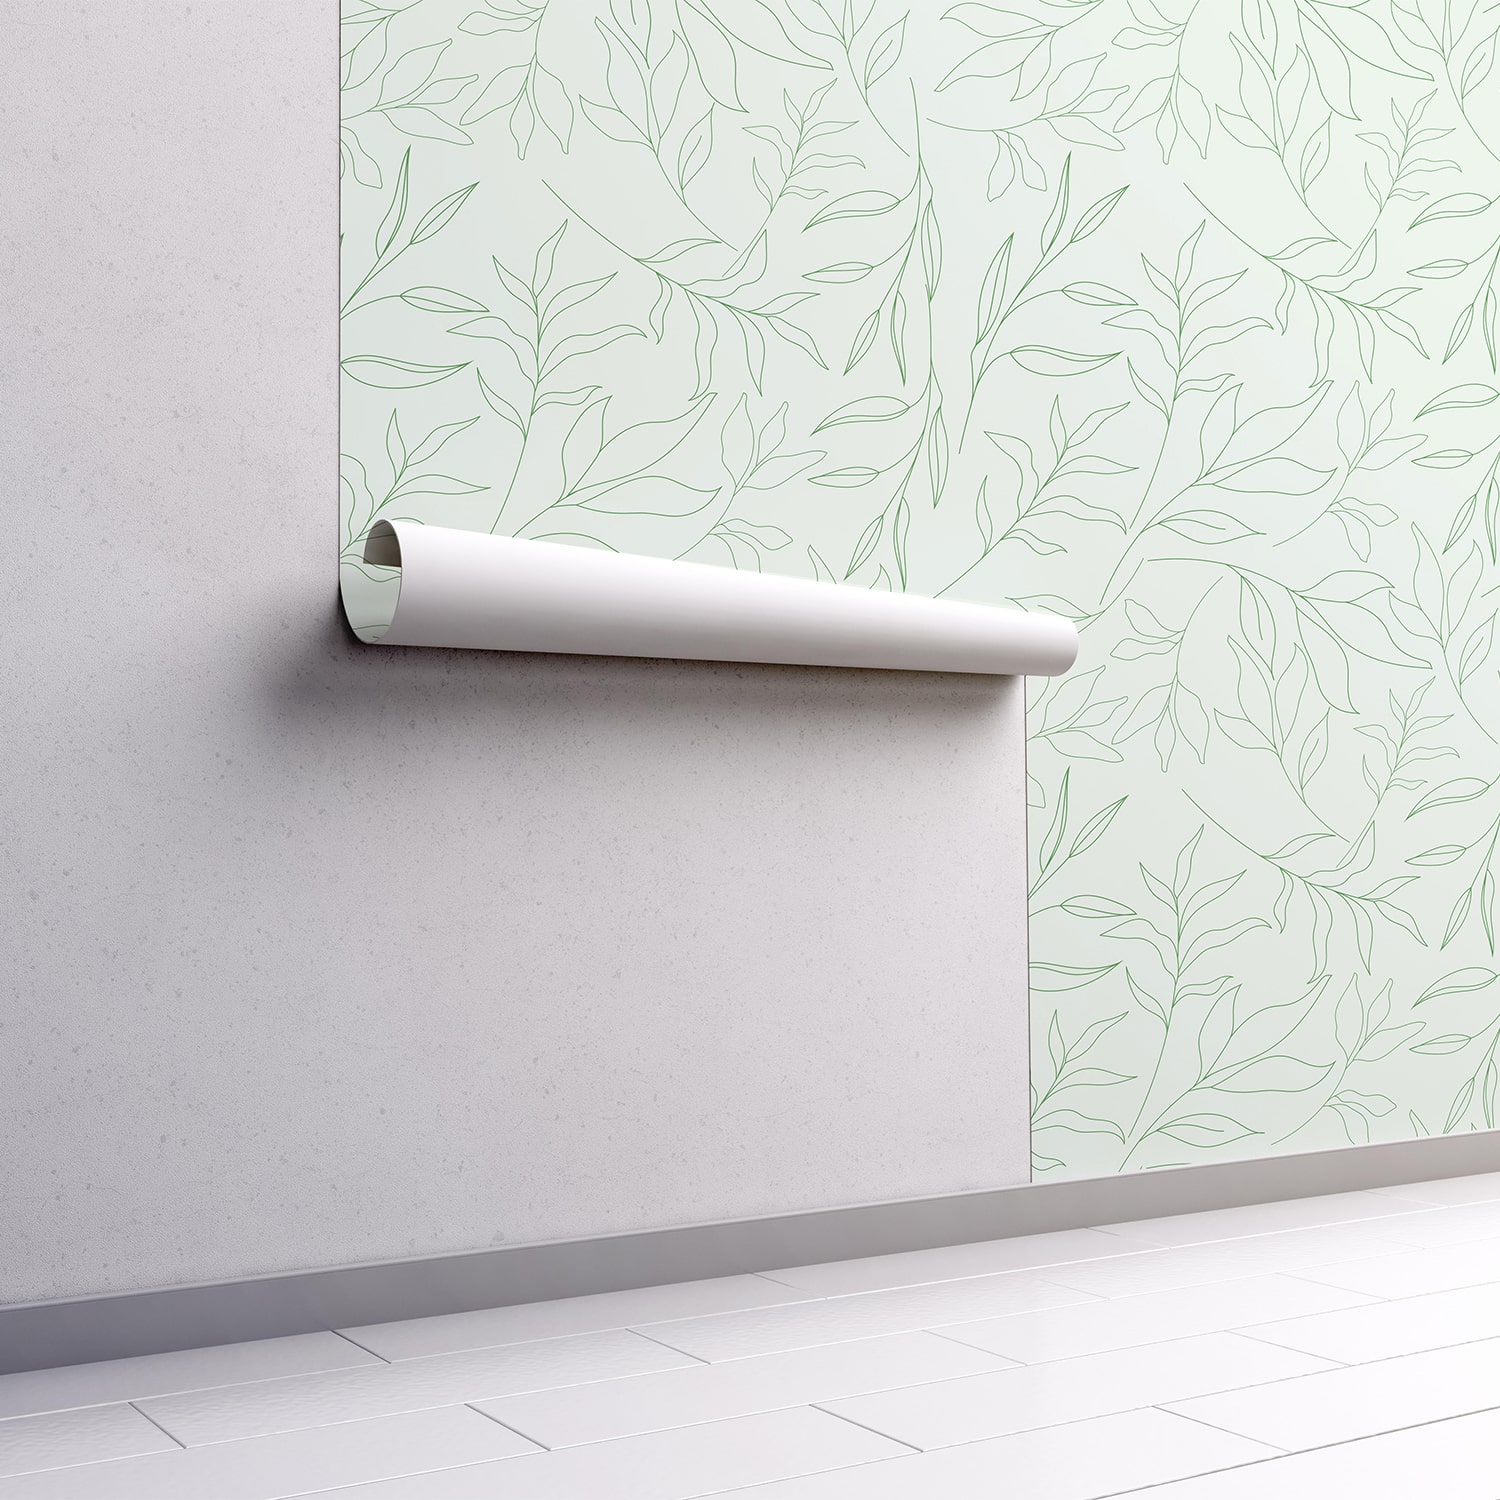 PP101-mur.rouleau-papier-peint-adhesif-decoratif-revetement-vinyle-motifs-feuillages-vert-nature-plantes-renovation-meuble-mur-min